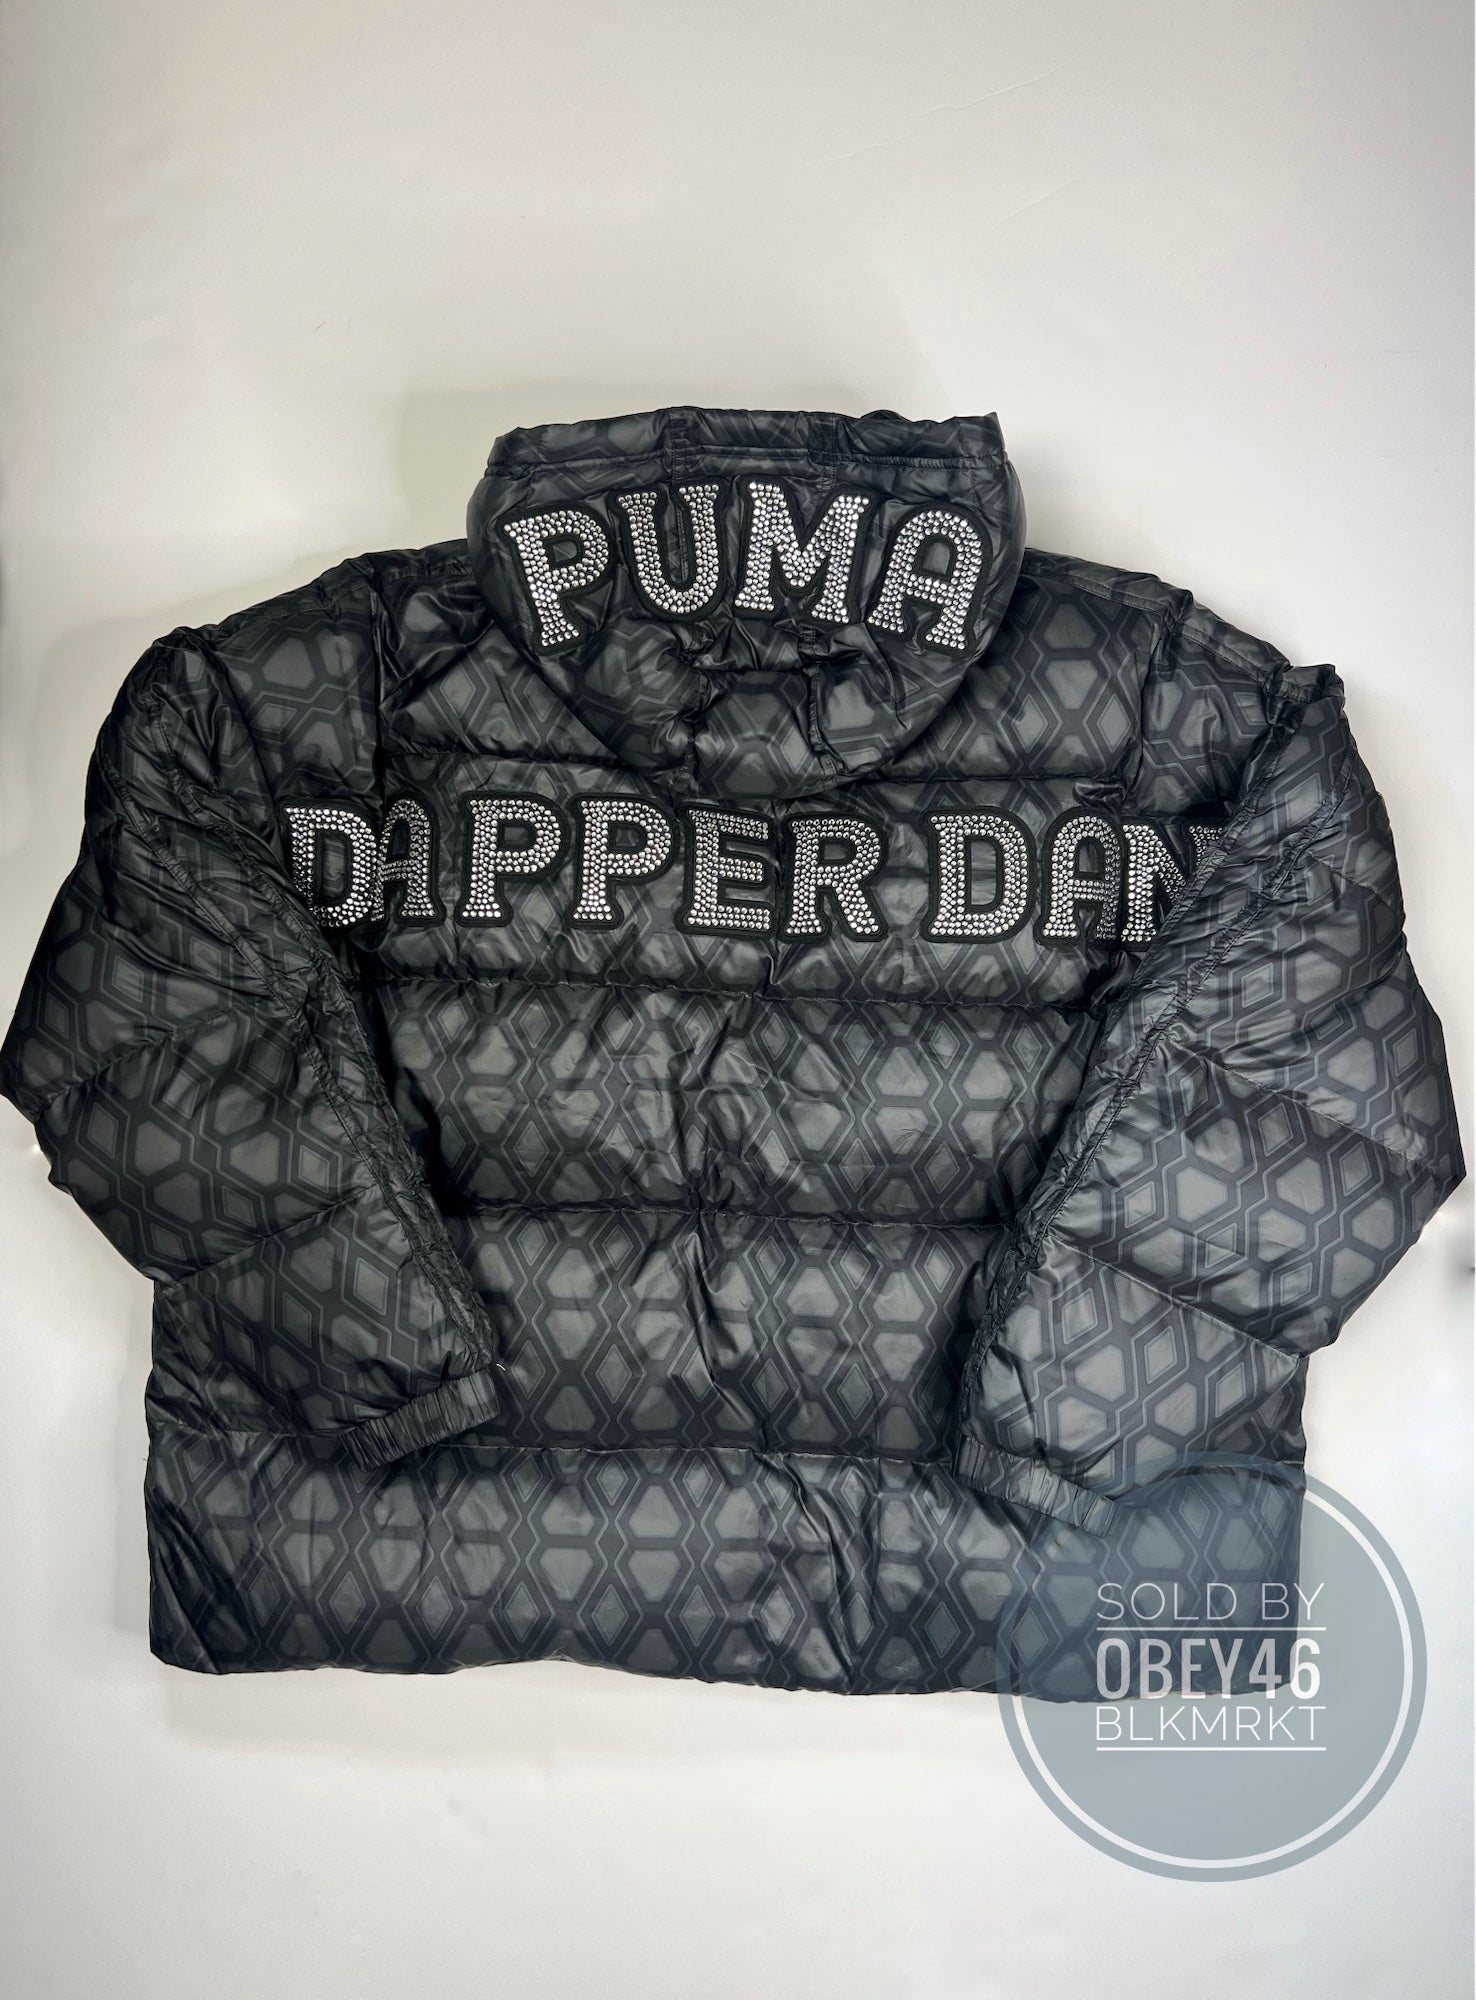 PUMA x DAPPER DAN Men's T7 Jacket